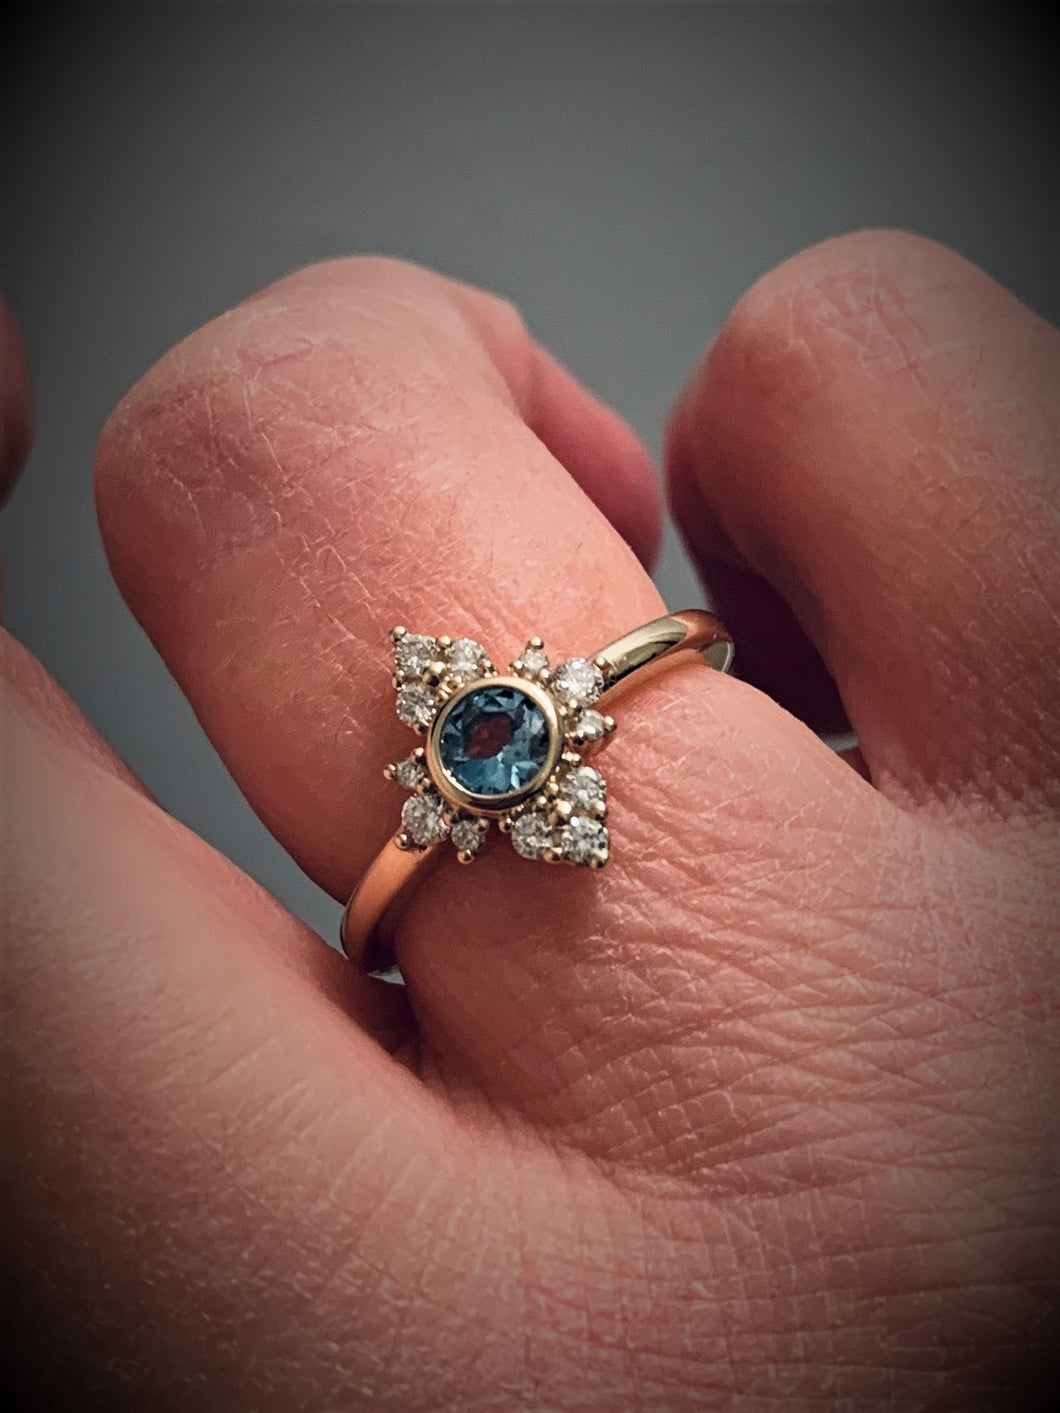 14K Gold Aquamarine Diamond Halo Ring Size 6 - MiShelli